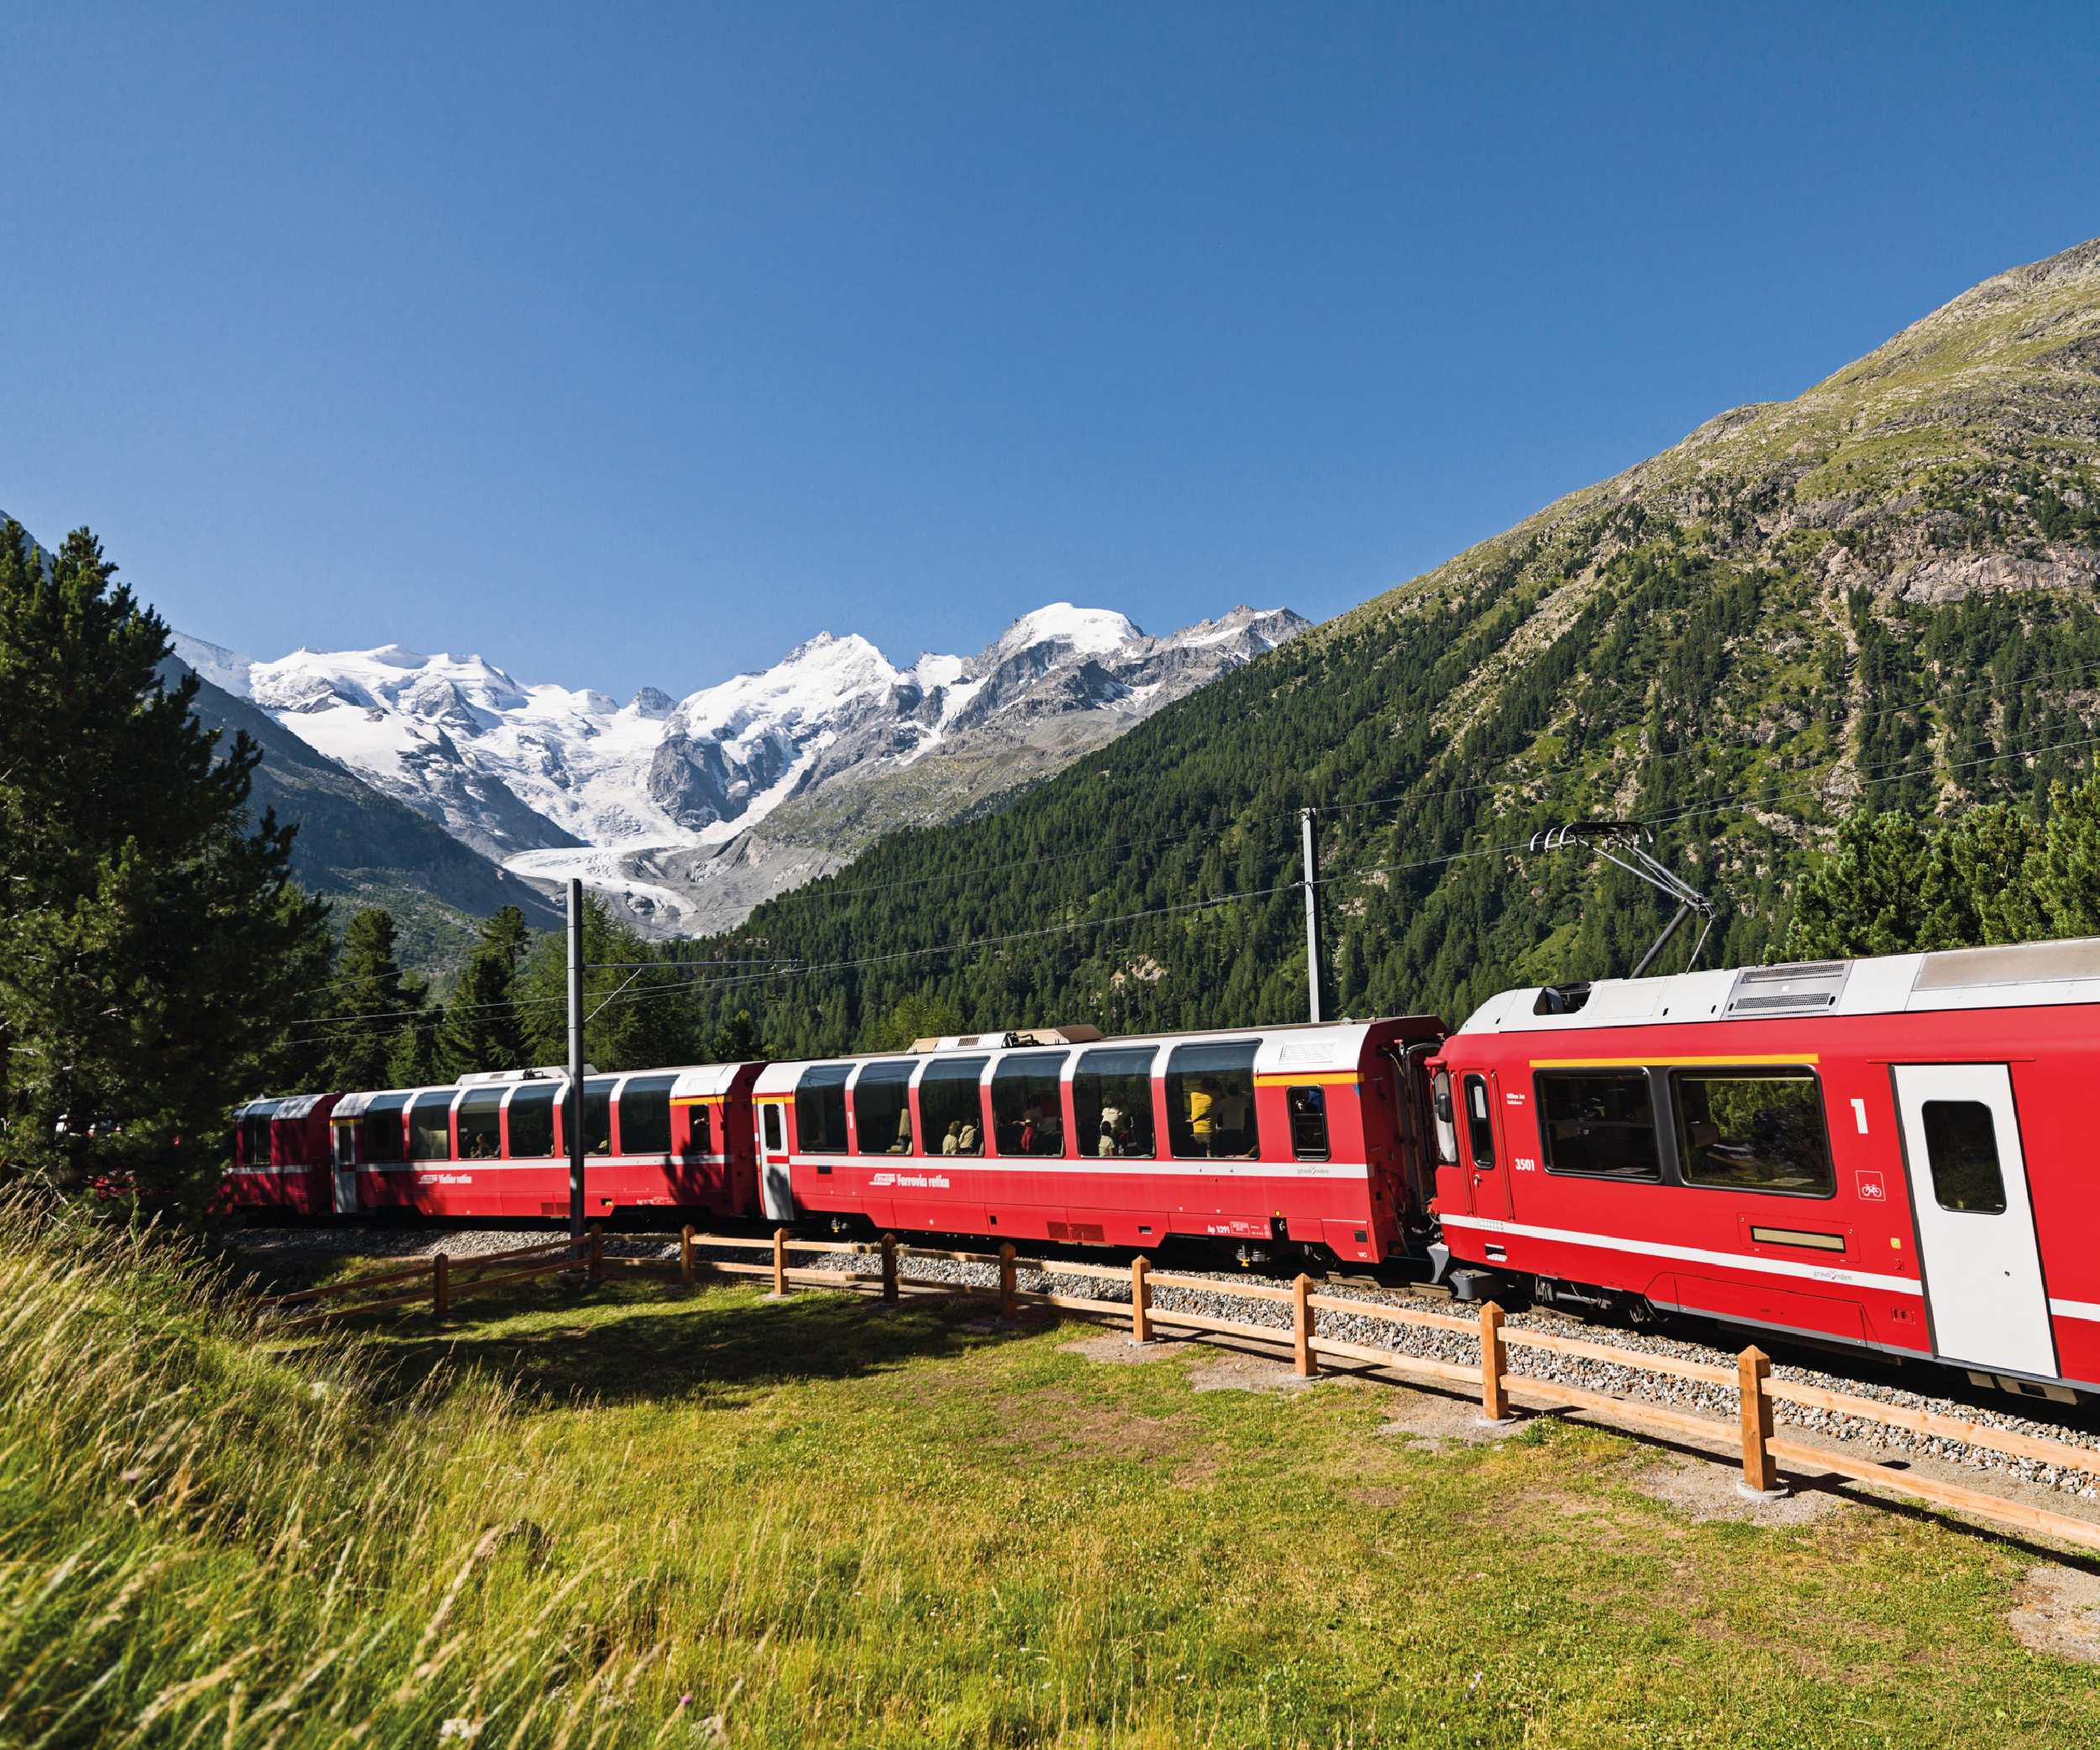 Bernina Express voucher